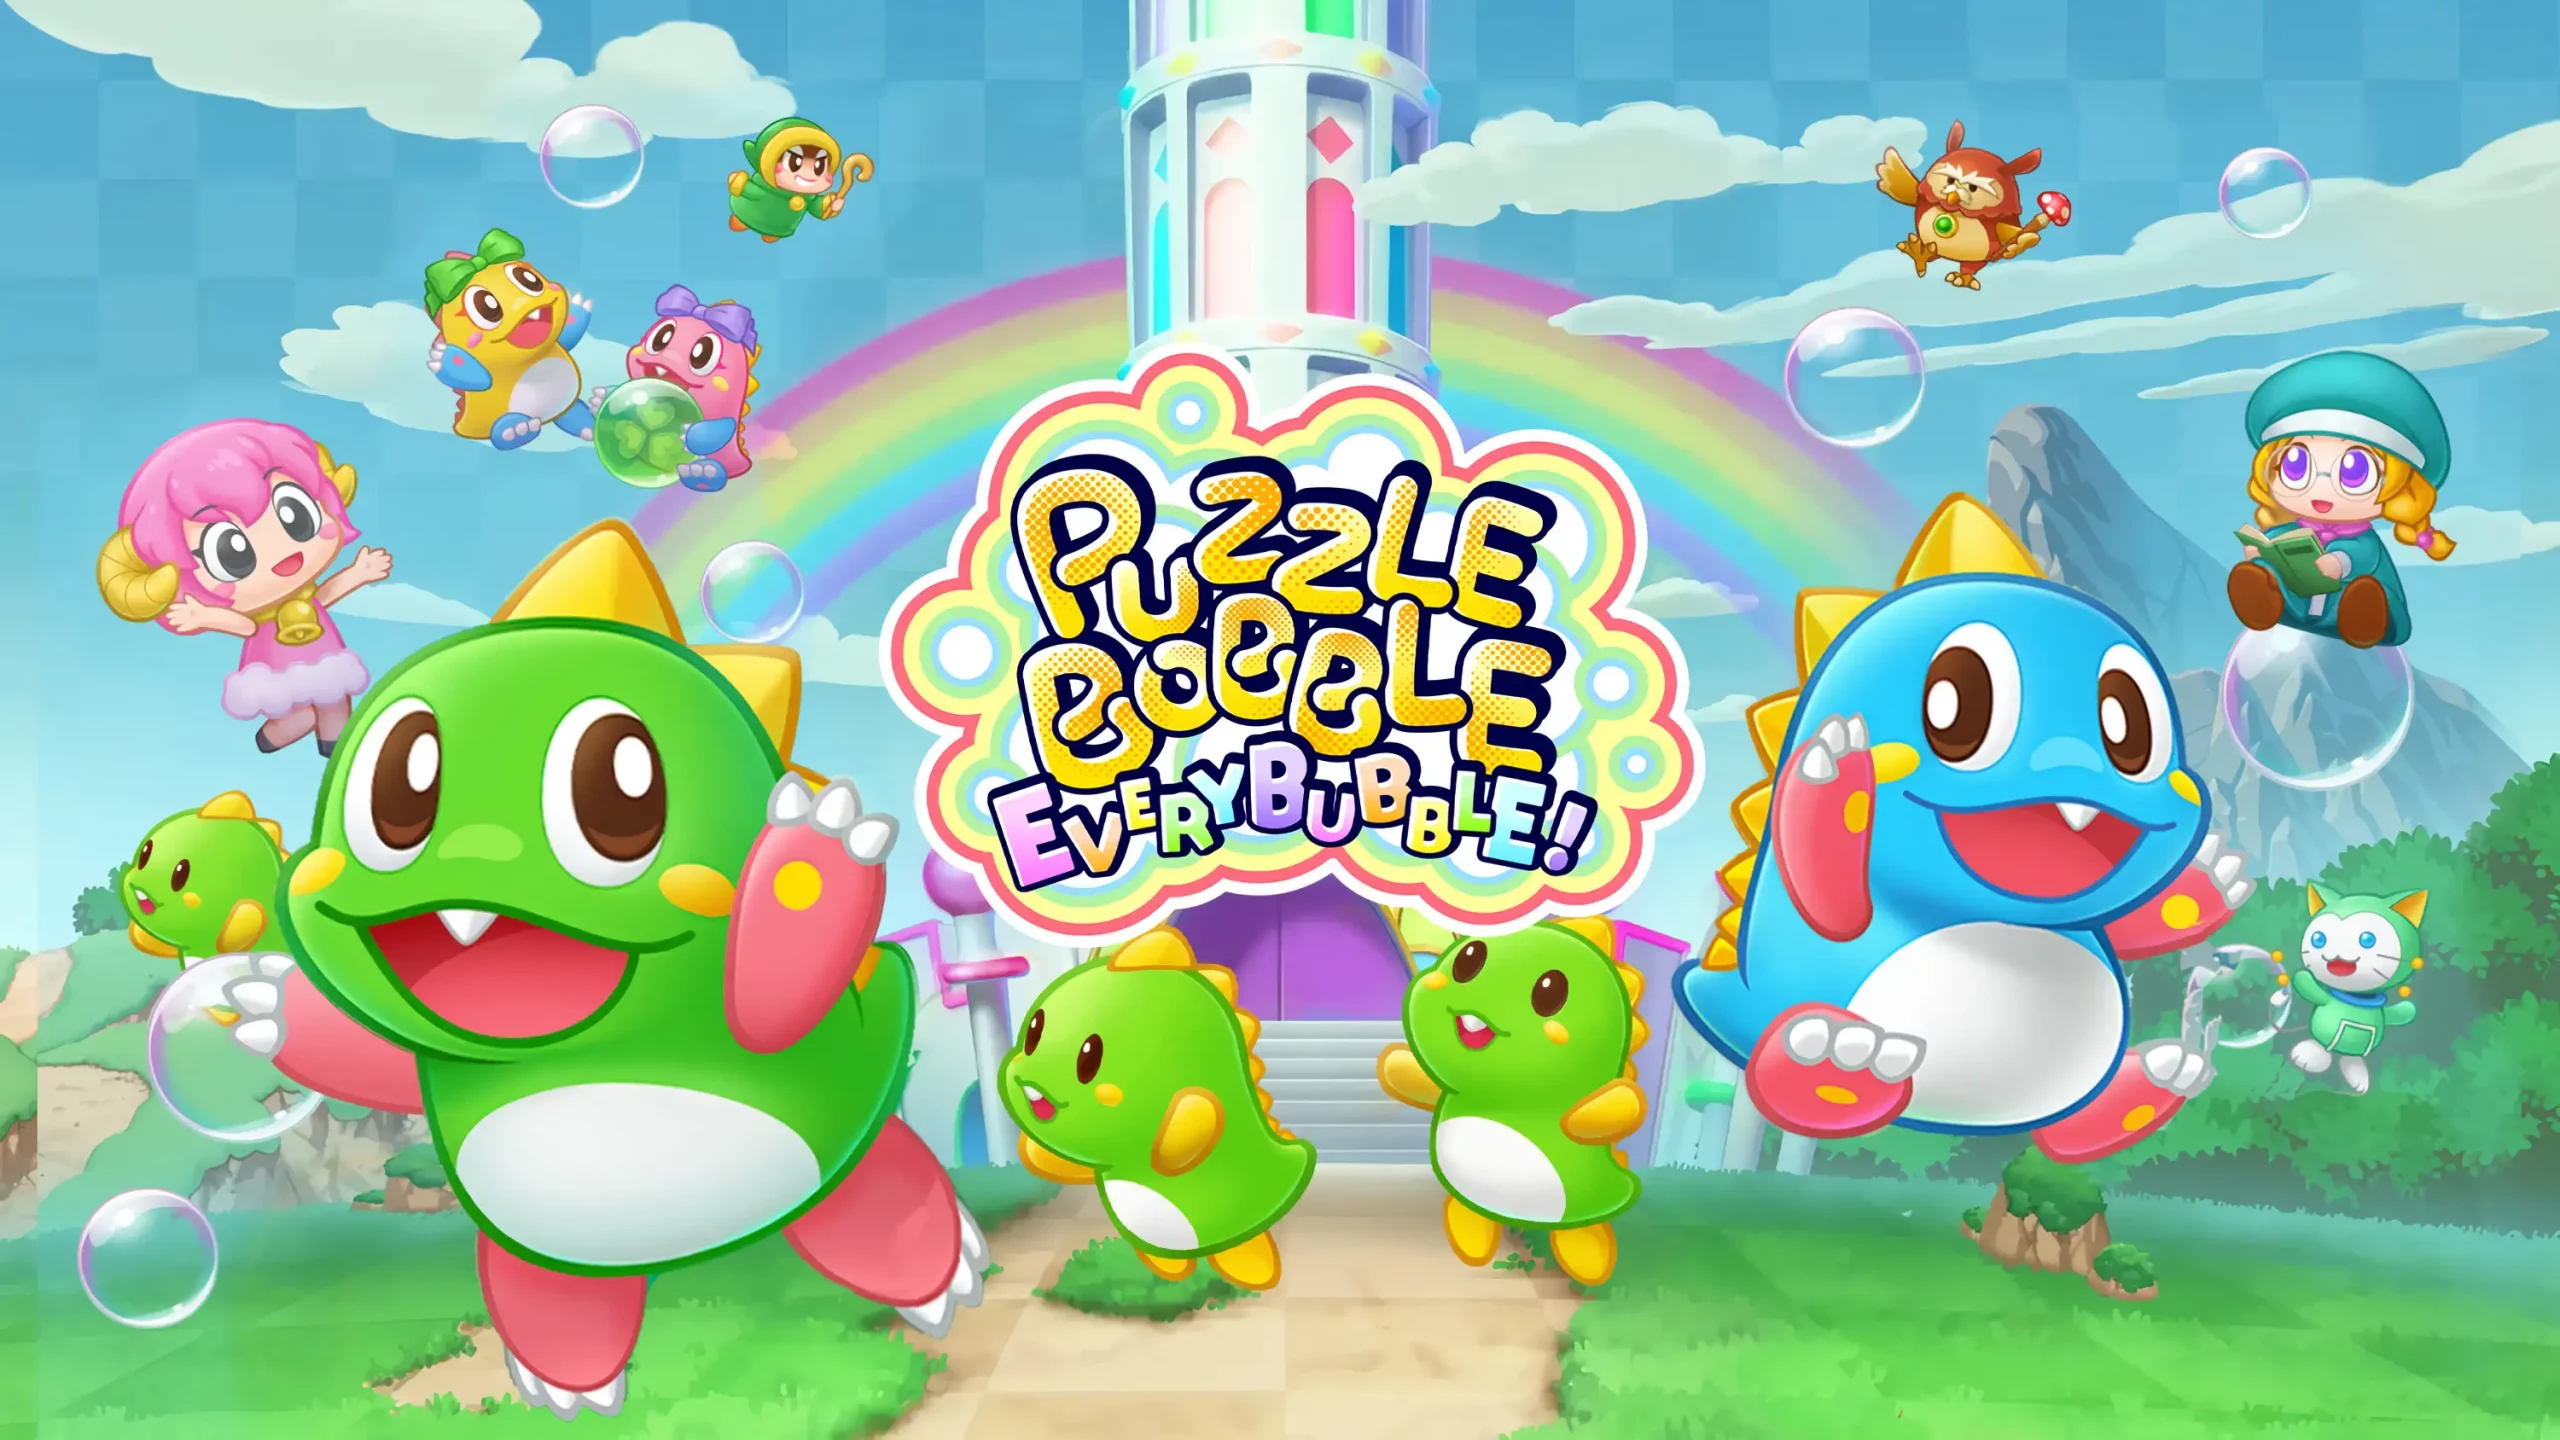 Puzzle Bobble Everybubble! ja disponible en format físic per a Nintendo Switch